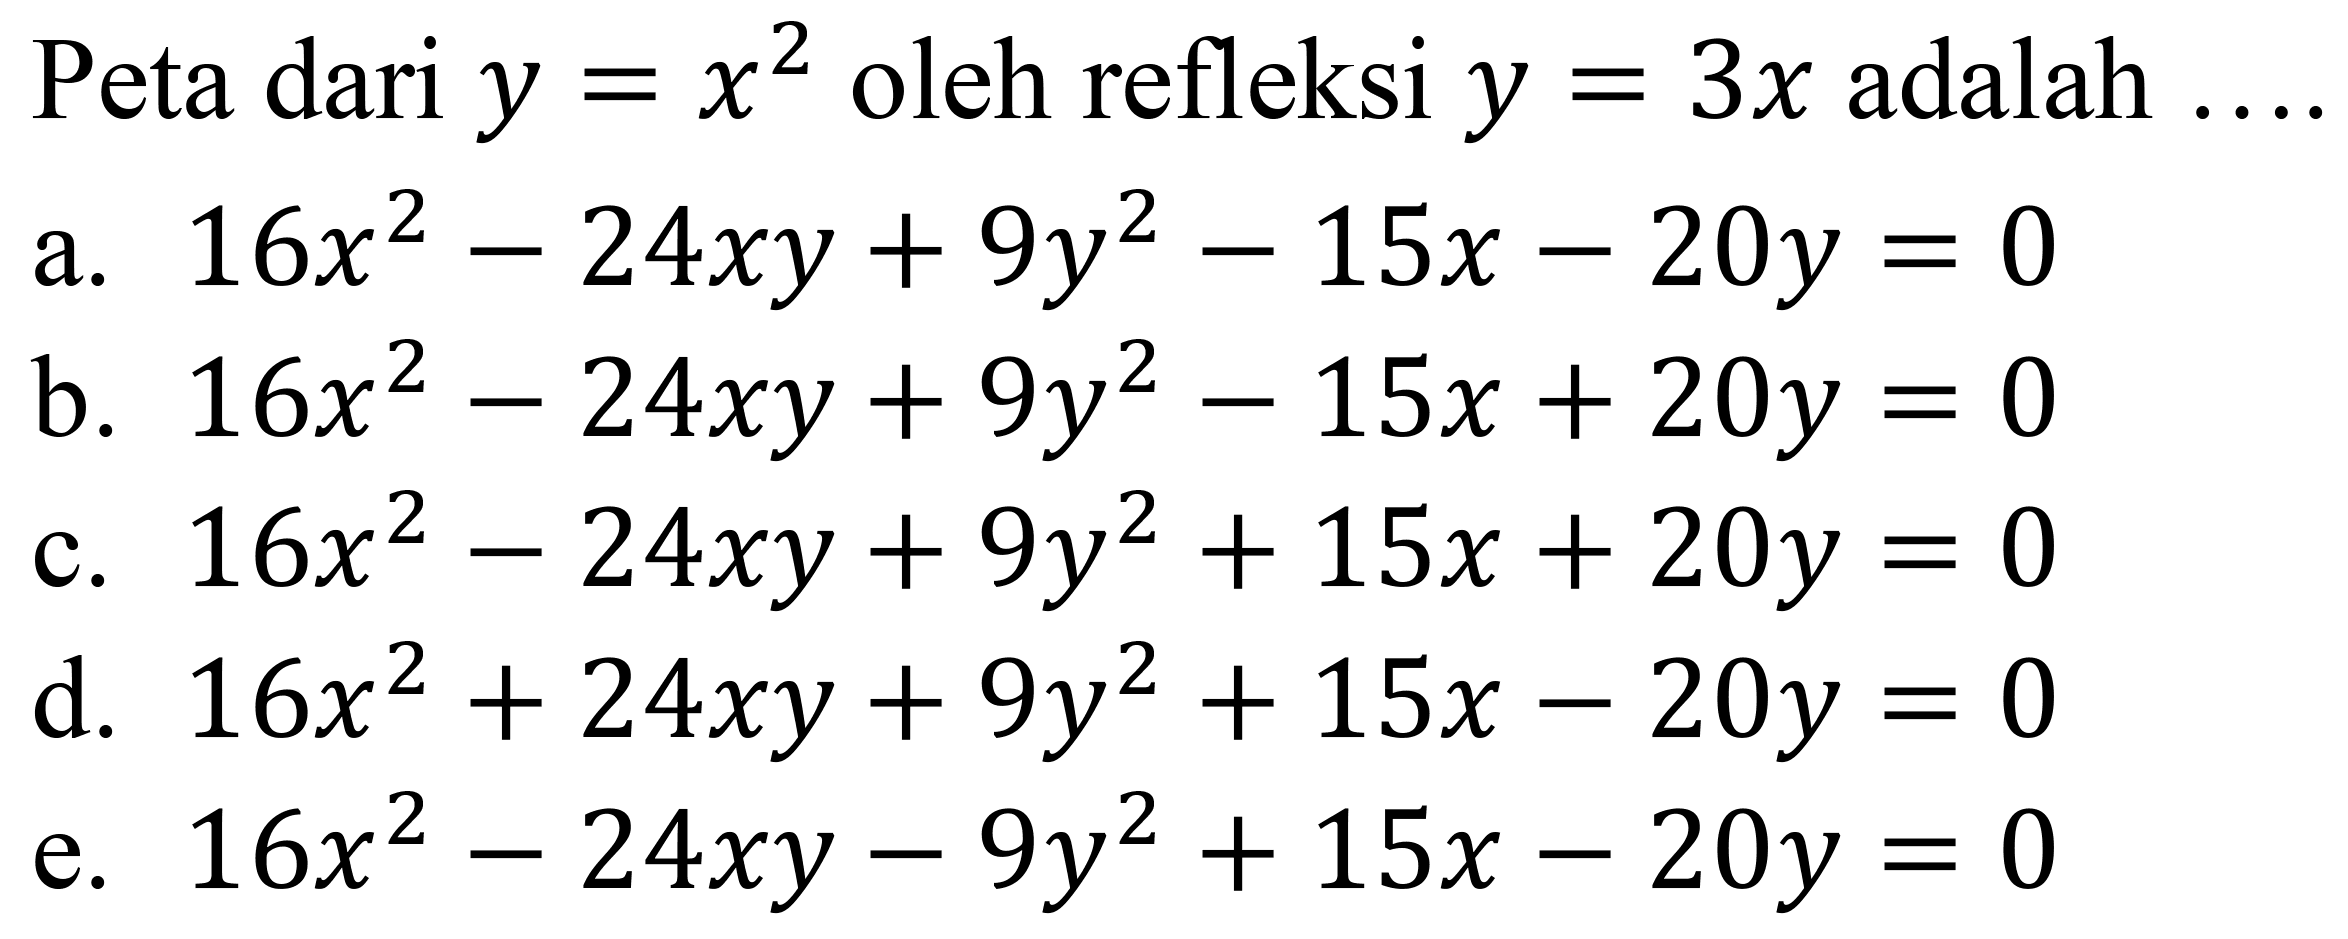 Peta dari  y=x^2  oleh refleksi  y=3 x  adalah  ... 
a.  16 x^2-24 x y+9 y^2-15 x-20 y=0 
b.  16 x^2-24 x y+9 y^2-15 x+20 y=0 
c.  16 x^2-24 x y+9 y^2+15 x+20 y=0 
d.  16 x^2+24 x y+9 y^2+15 x-20 y=0 
e.  16 x^2-24 x y-9 y^2+15 x-20 y=0 